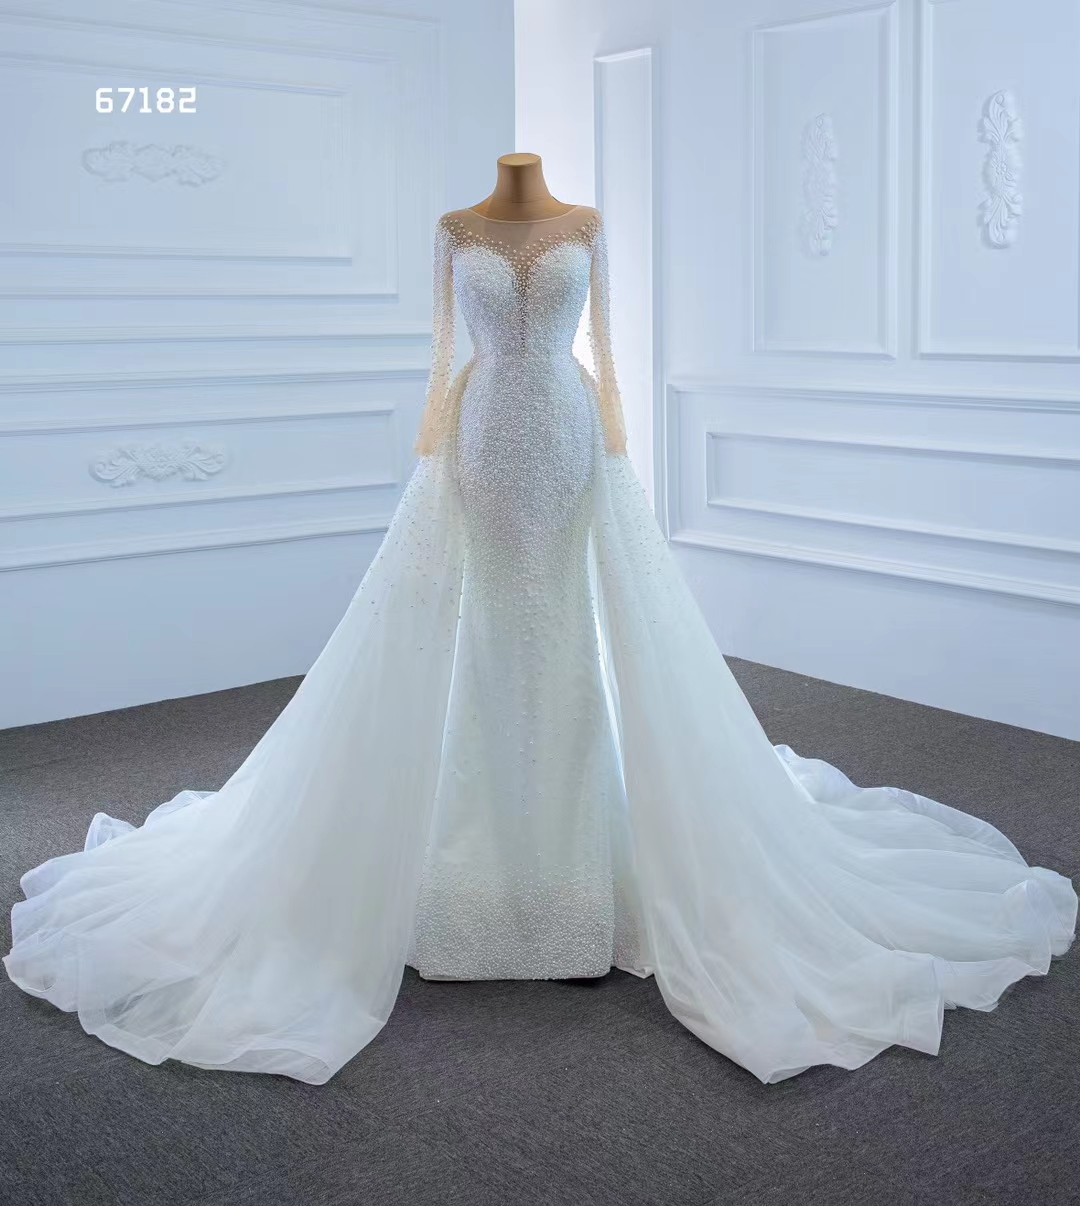 Русалка свадебное платье принцесса с длинным рукавом хрустальное кружевное платье, элегантная возлюбленная SM67182